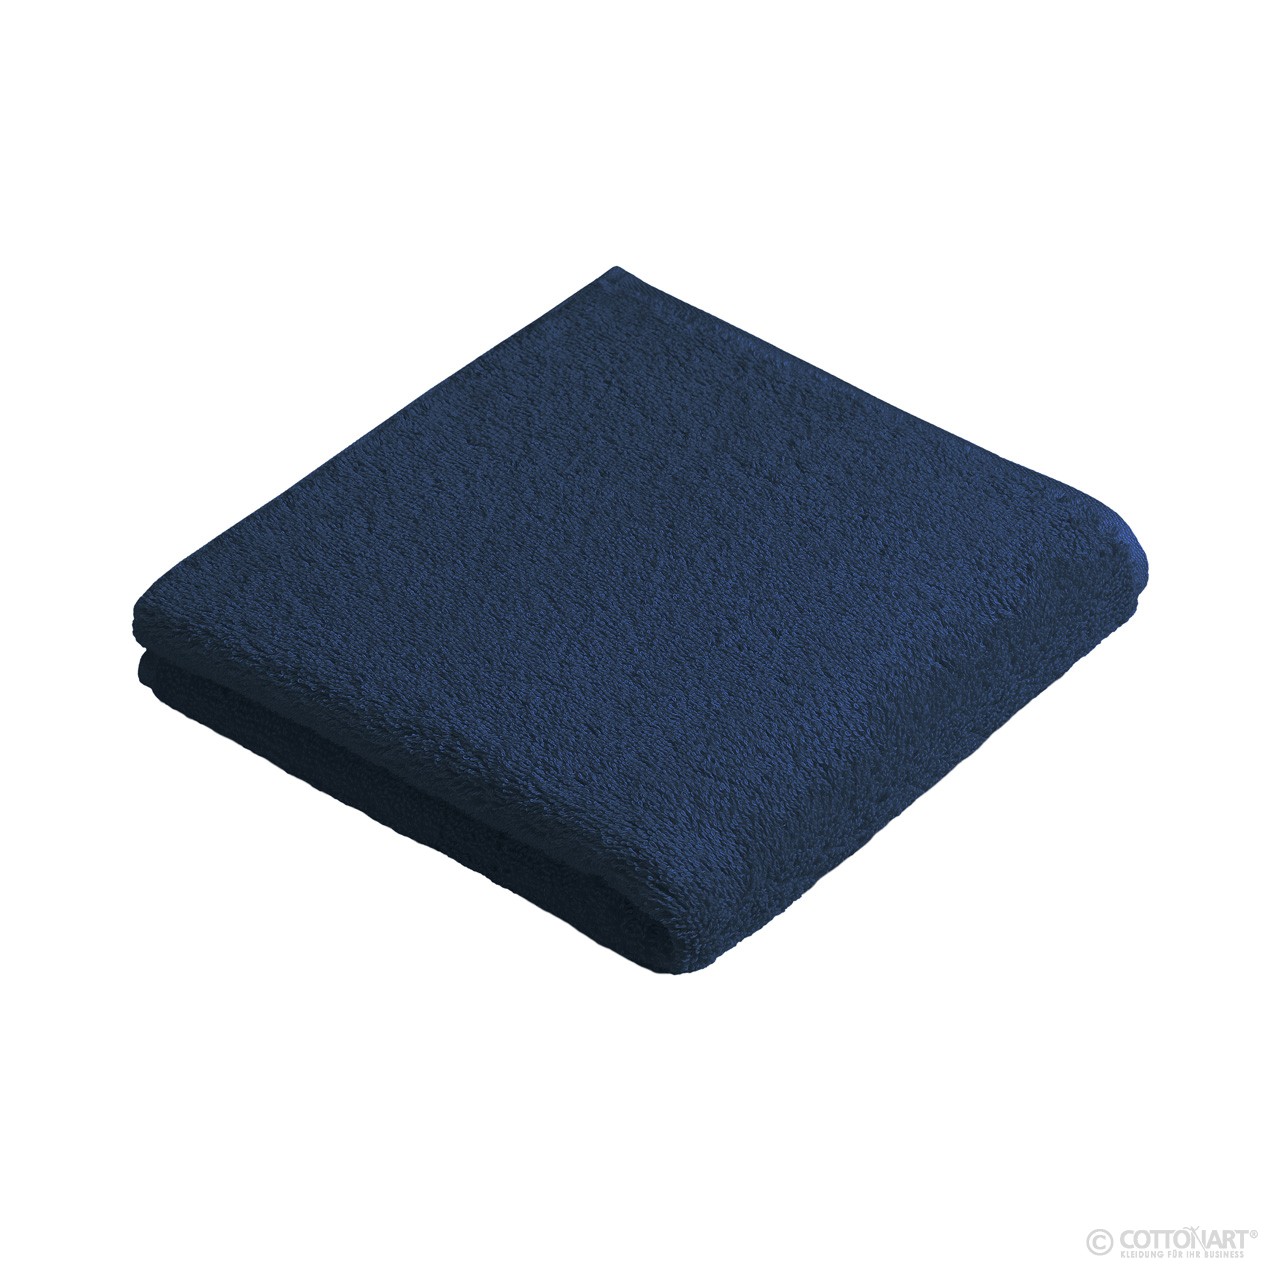 New Generation Towel 480 g/m² 50 x 100 cm Vossen® darkblue